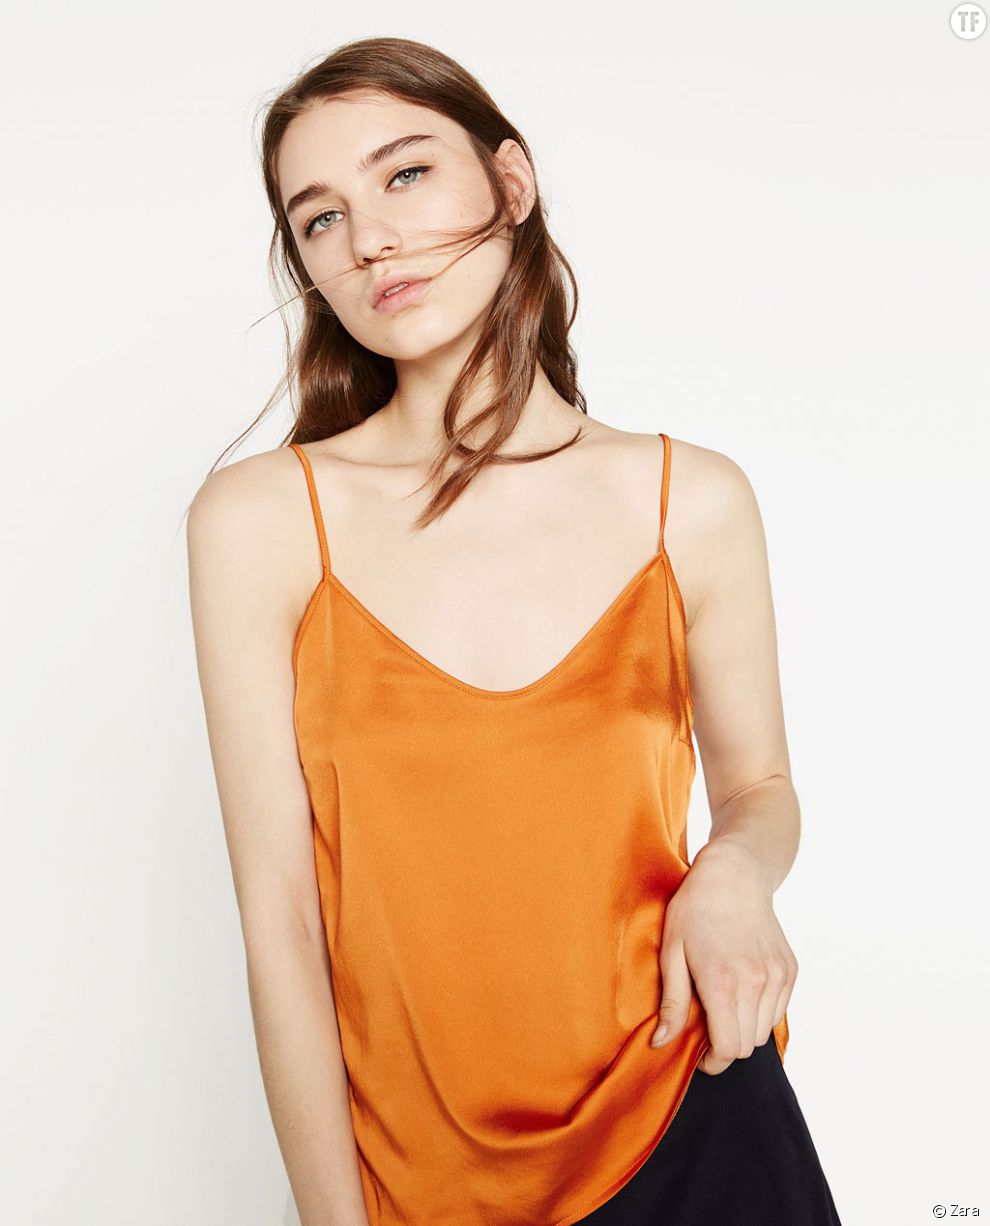  Top en satin orange Zara 7,99 euros 